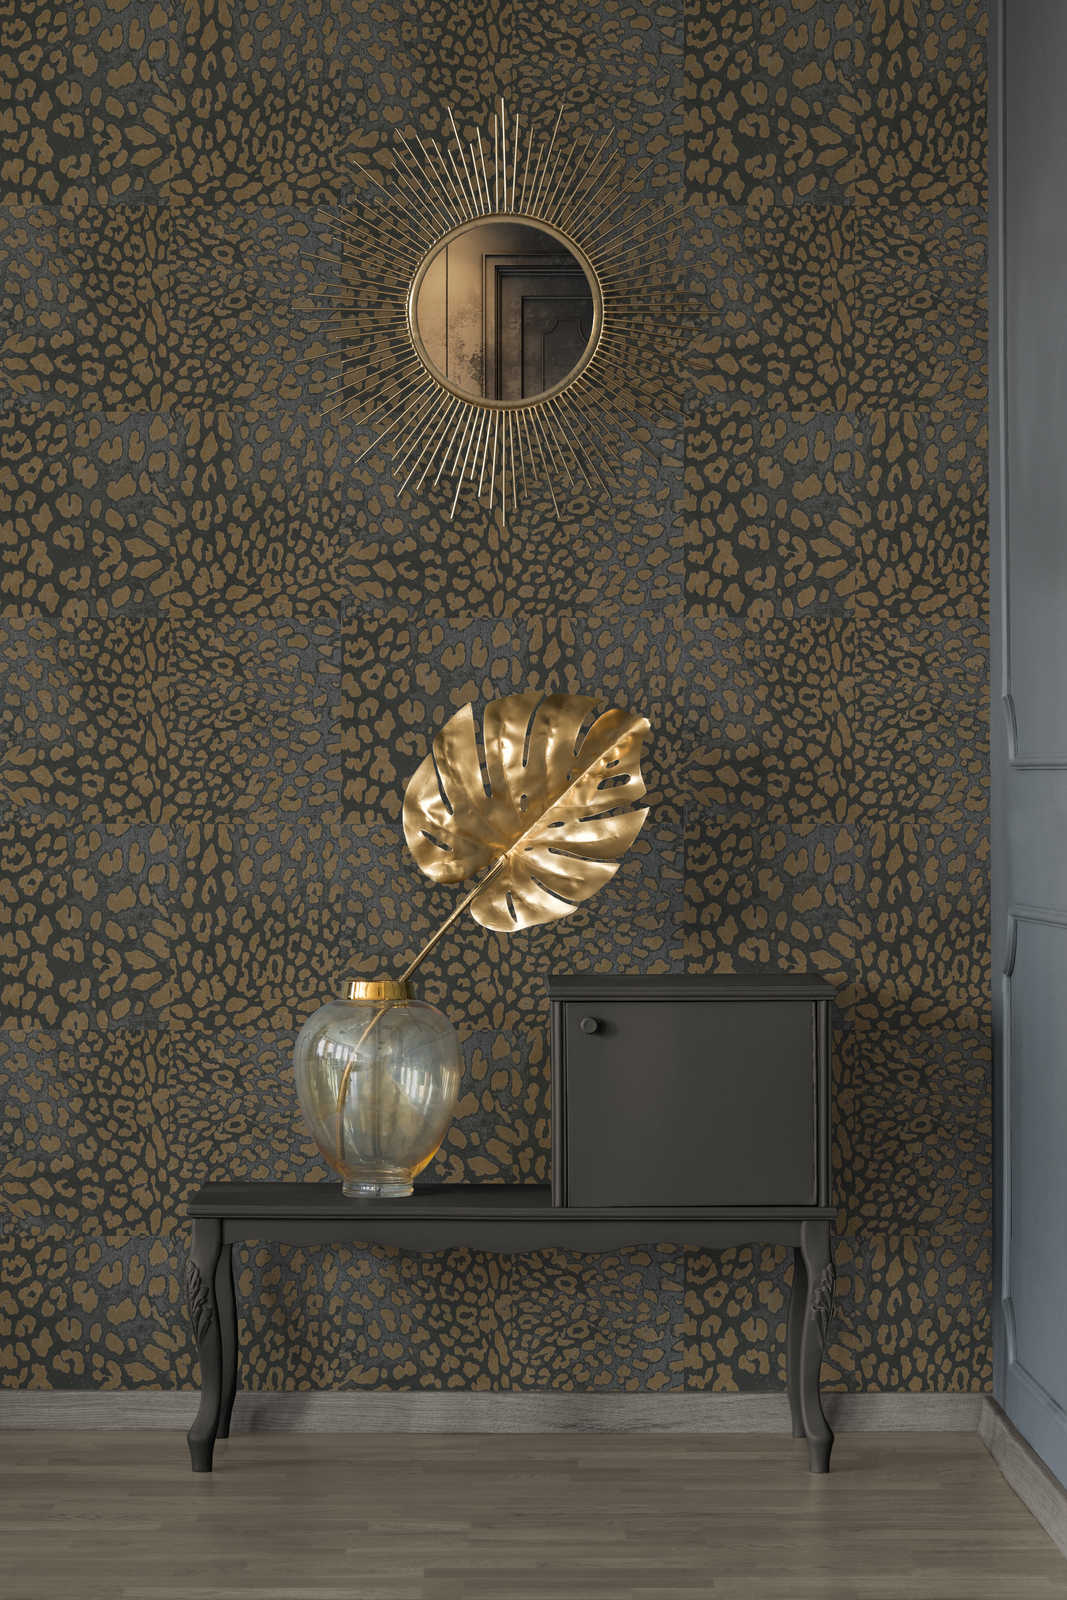             Animal print wallpaper with metallic pattern - grey, gold
        